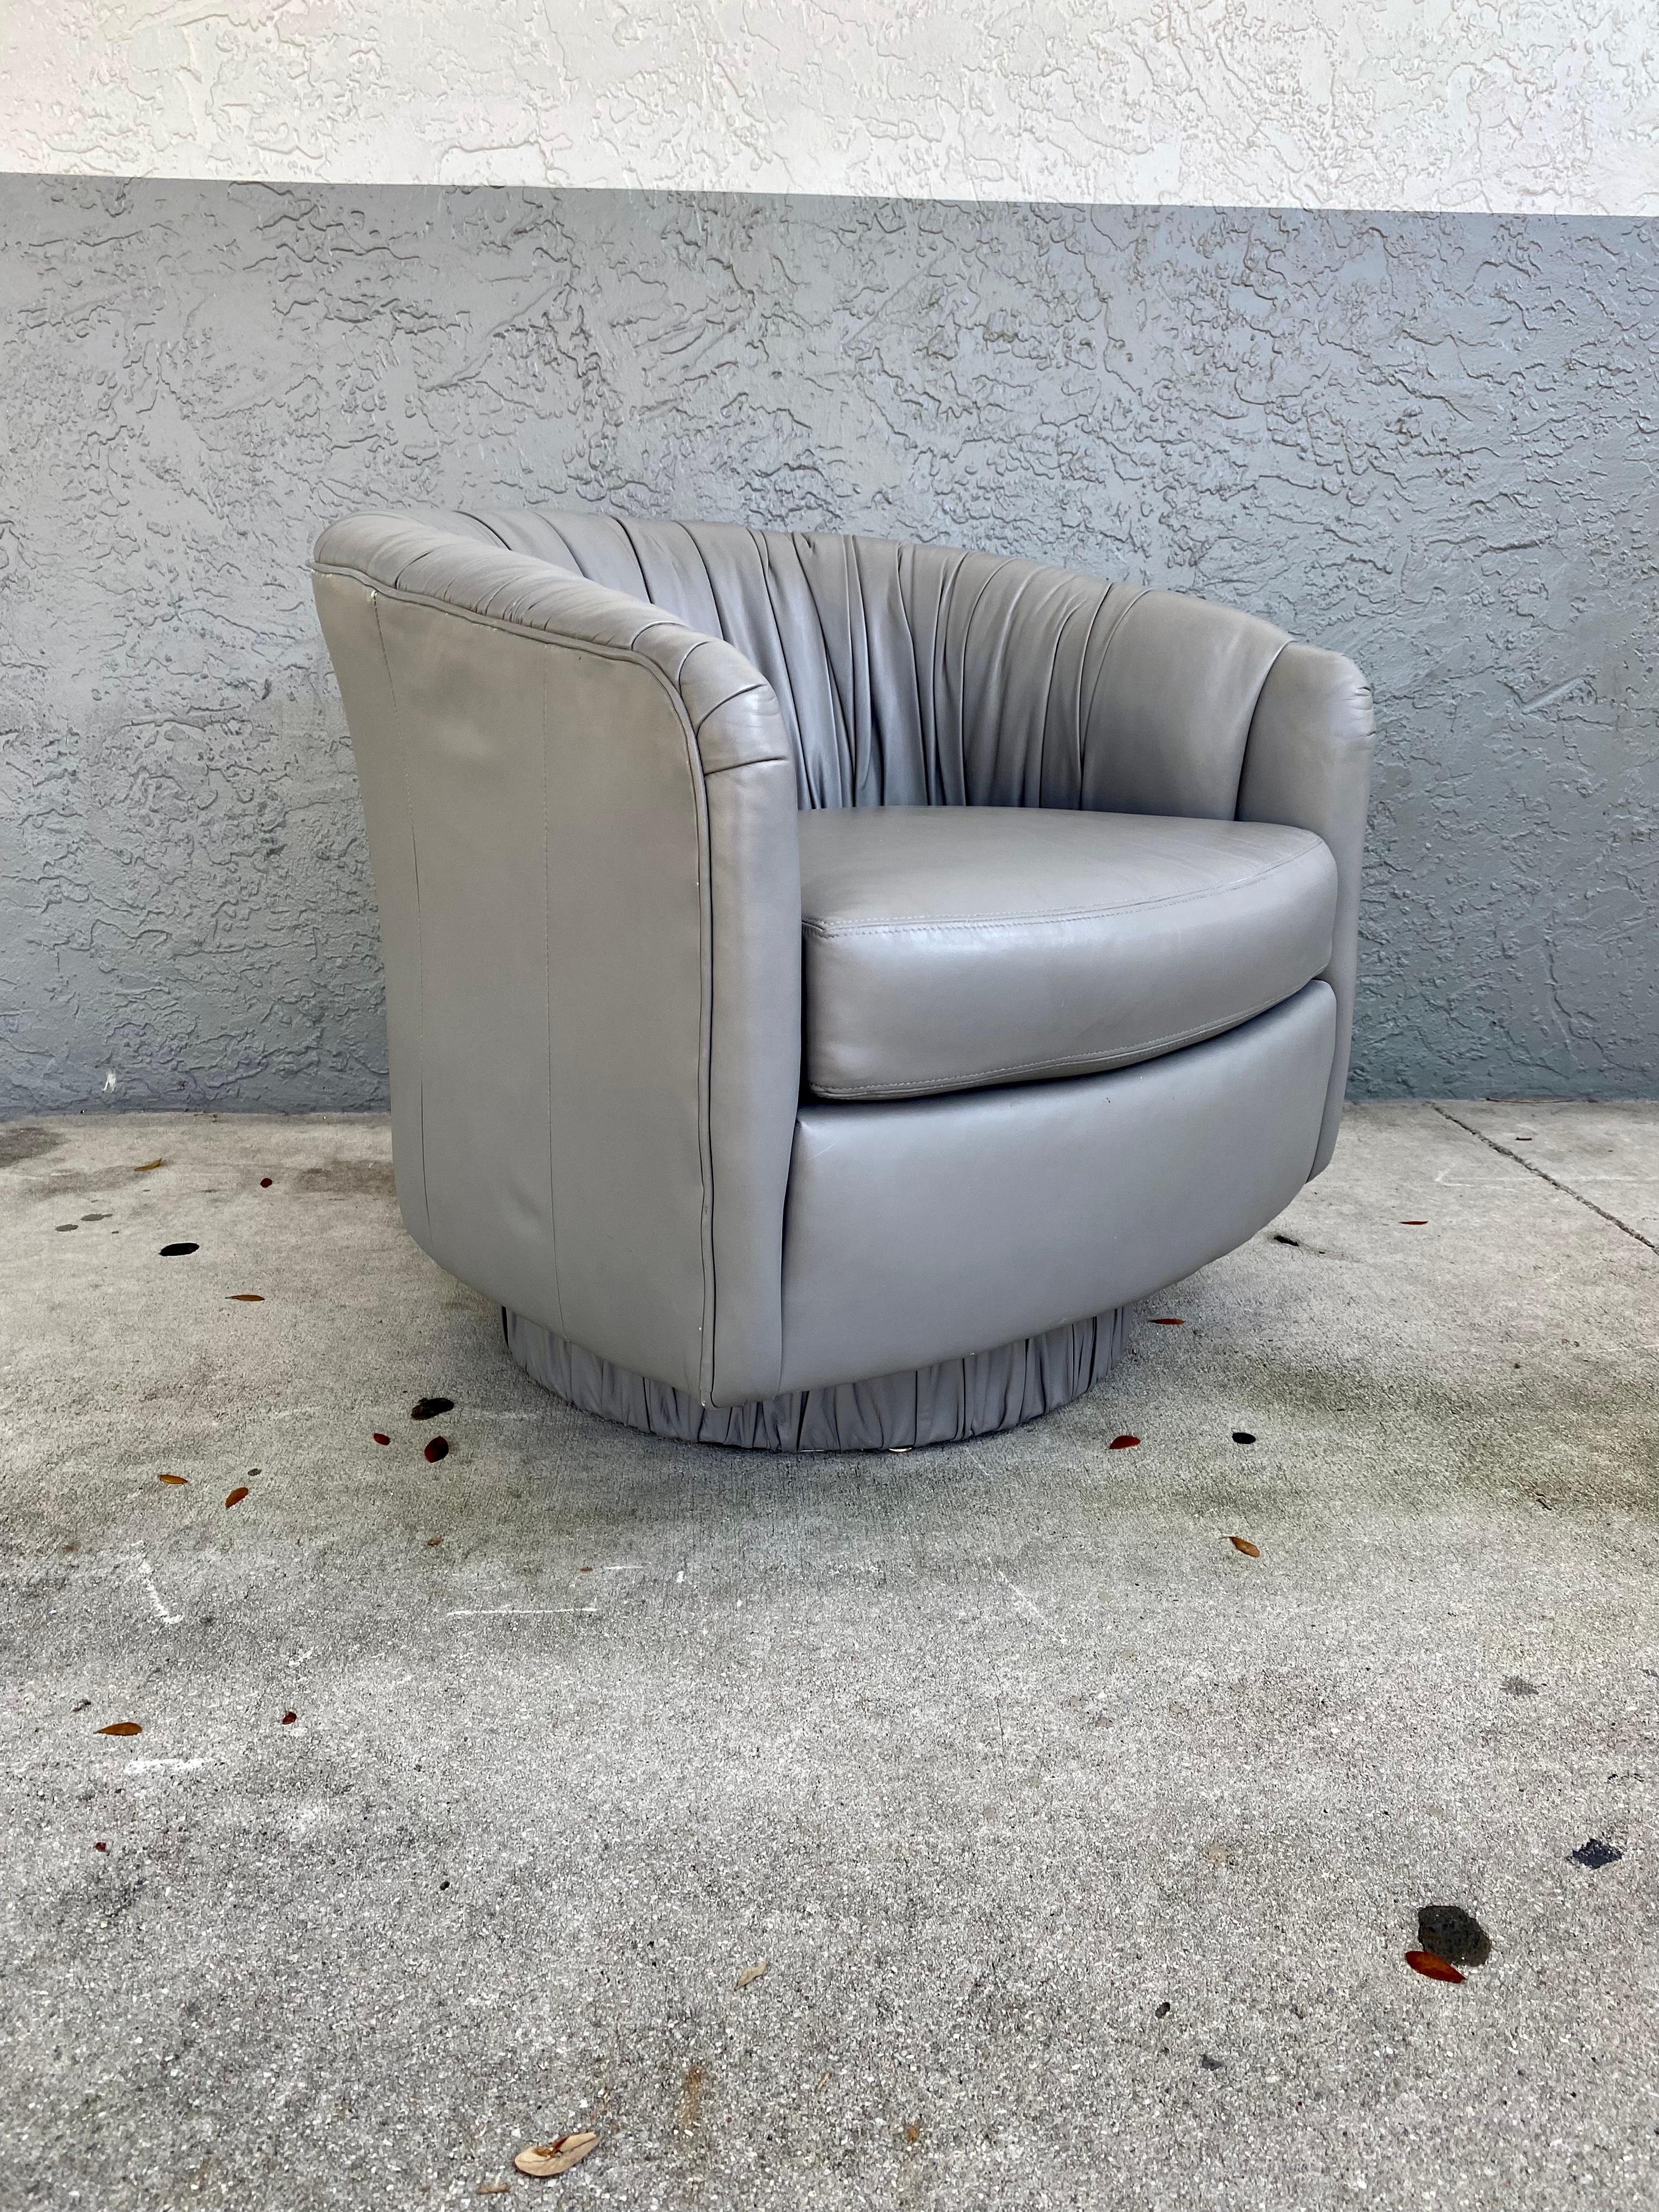 Nous vous proposons ici l'un des plus beaux fauteuils pivotants que vous puissiez espérer trouver. Il s'agit d'une occasion très rare d'acquérir ce qui est, sans équivoque, le meilleur des meilleurs, car il s'agit d'une chaise très spectaculaire et